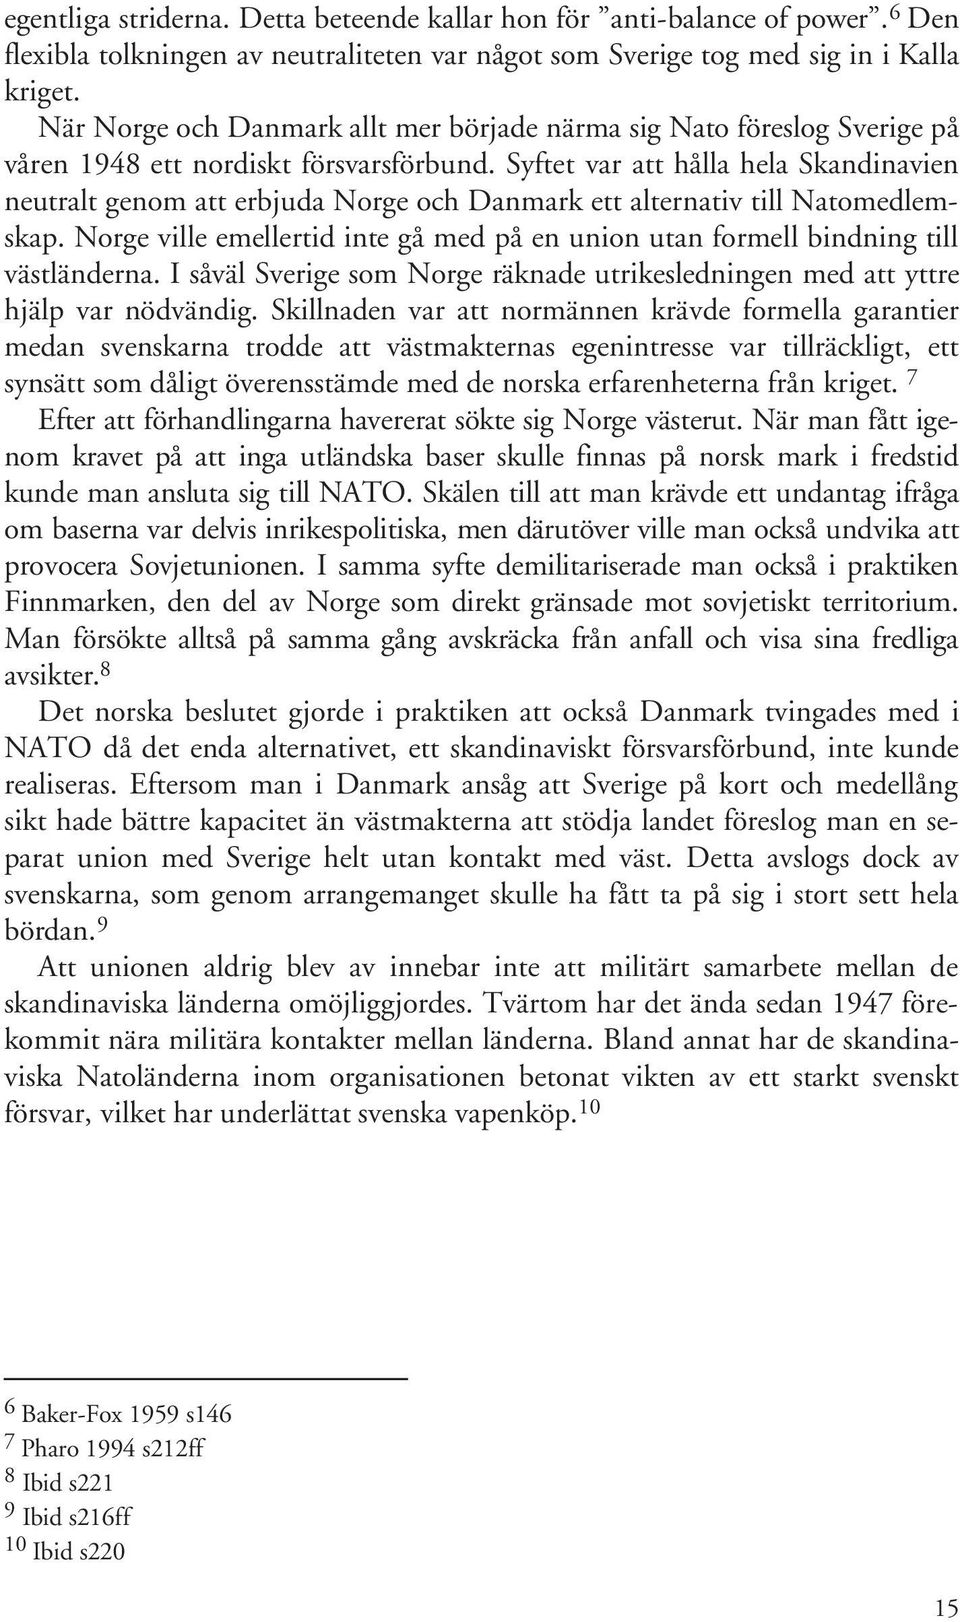 Syftet var att hålla hela Skandinavien neutralt genom att erbjuda Norge och Danmark ett alternativ till Natomedlemskap.